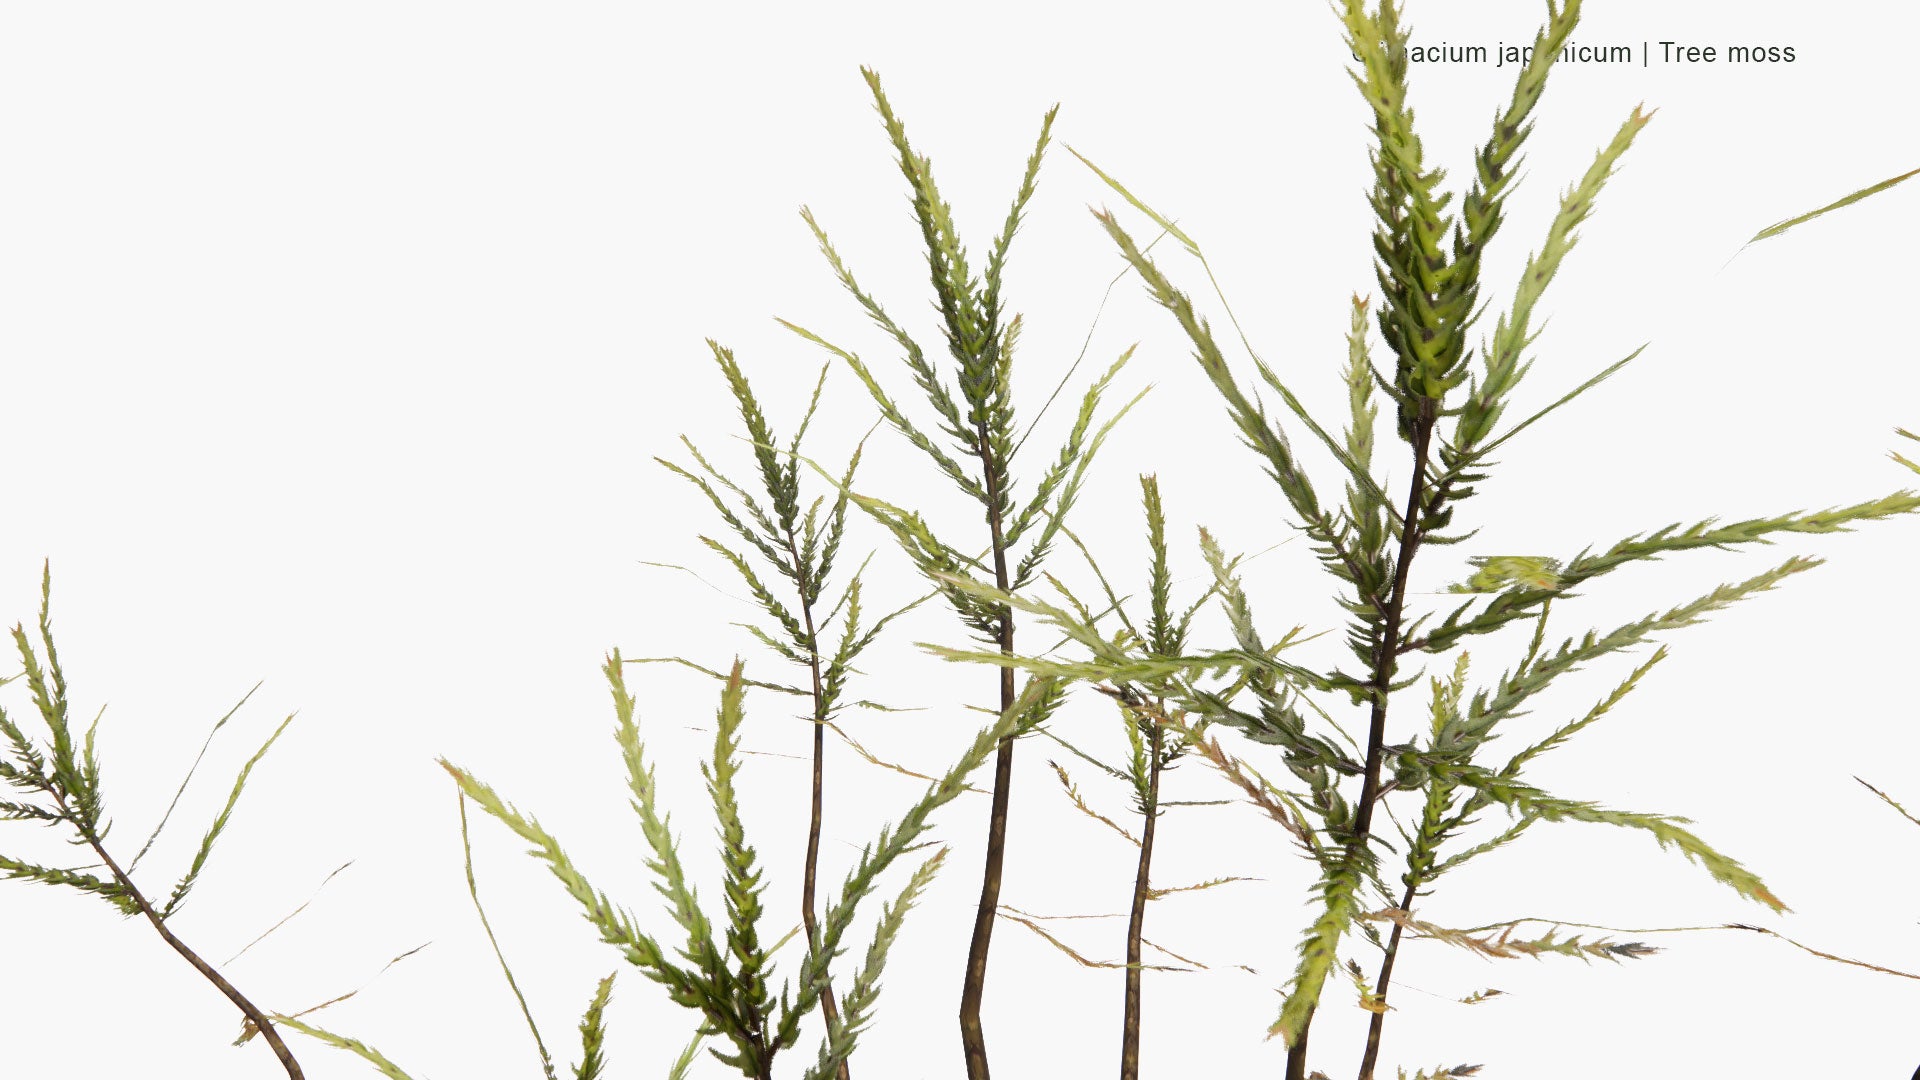 Low Poly Climacium Japonicum - Tree Moss (3D Model)